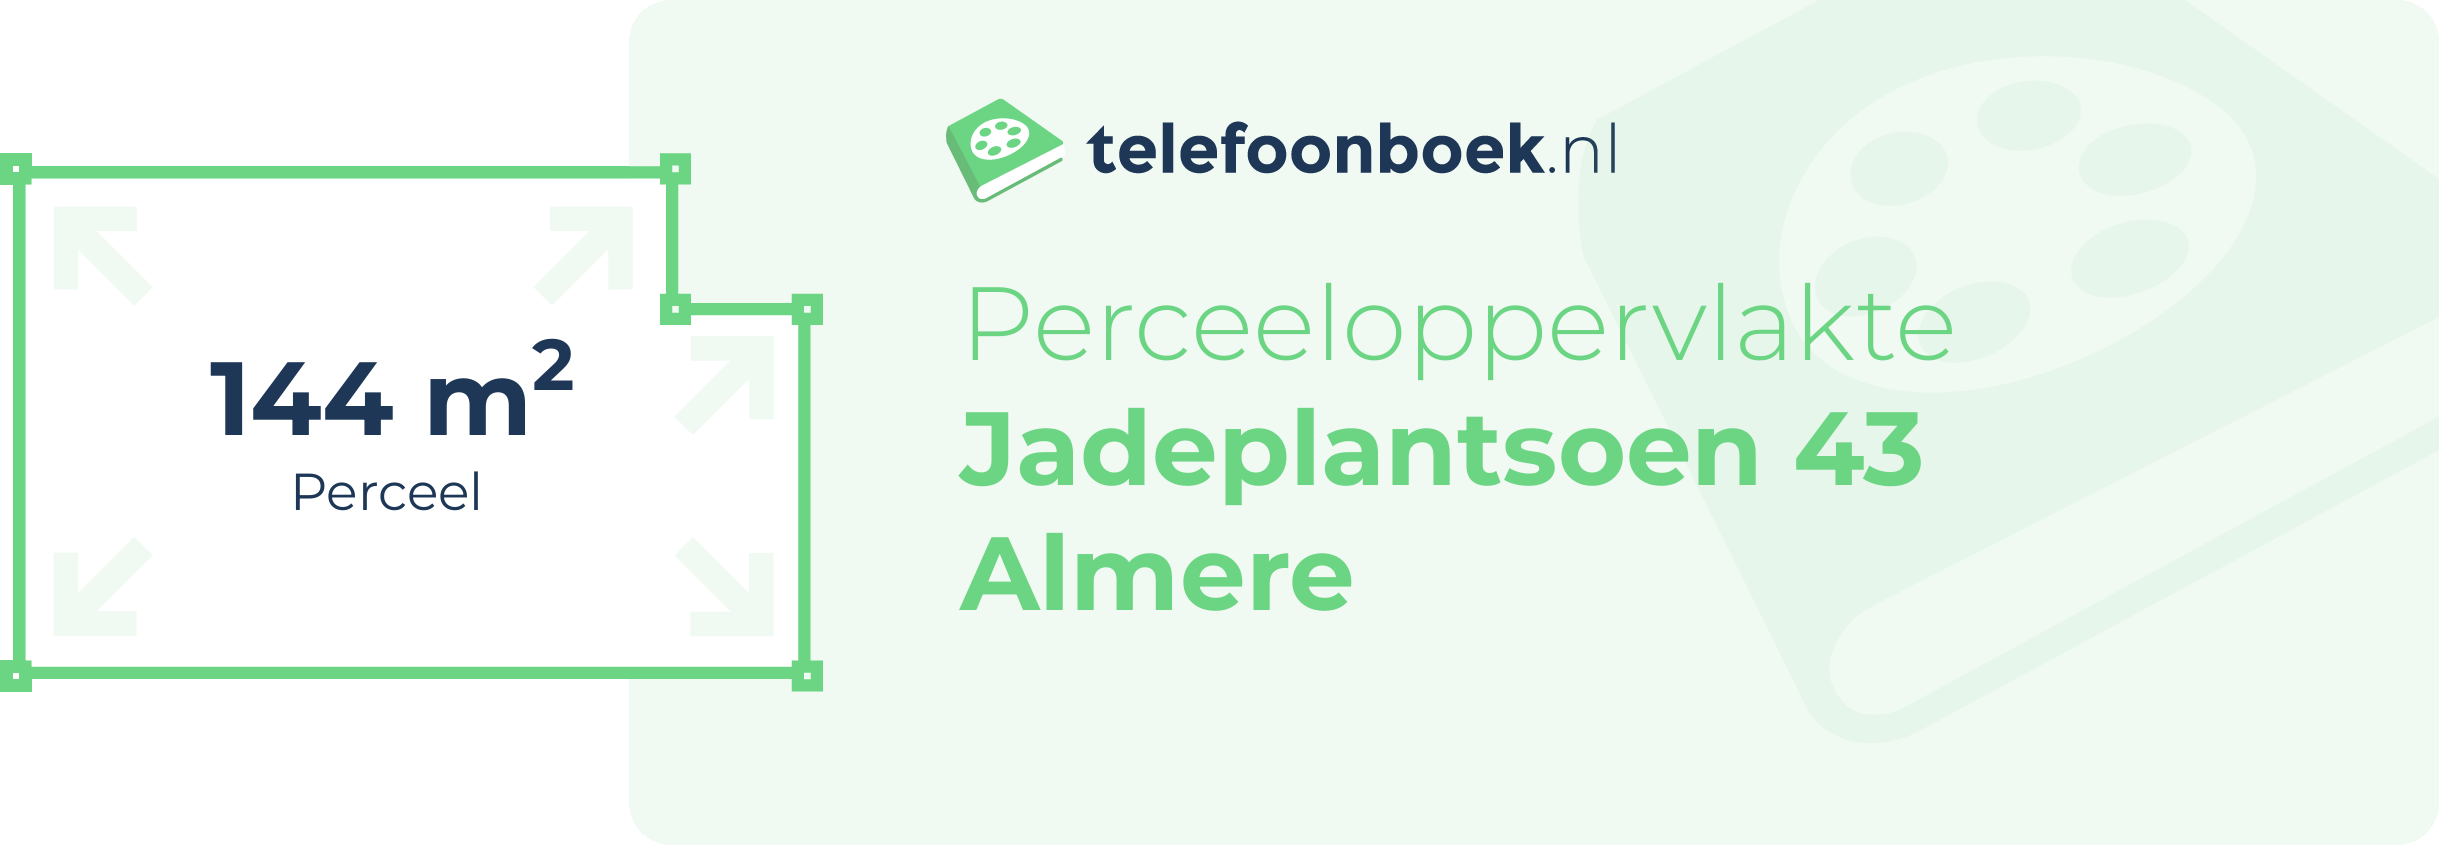 Perceeloppervlakte Jadeplantsoen 43 Almere